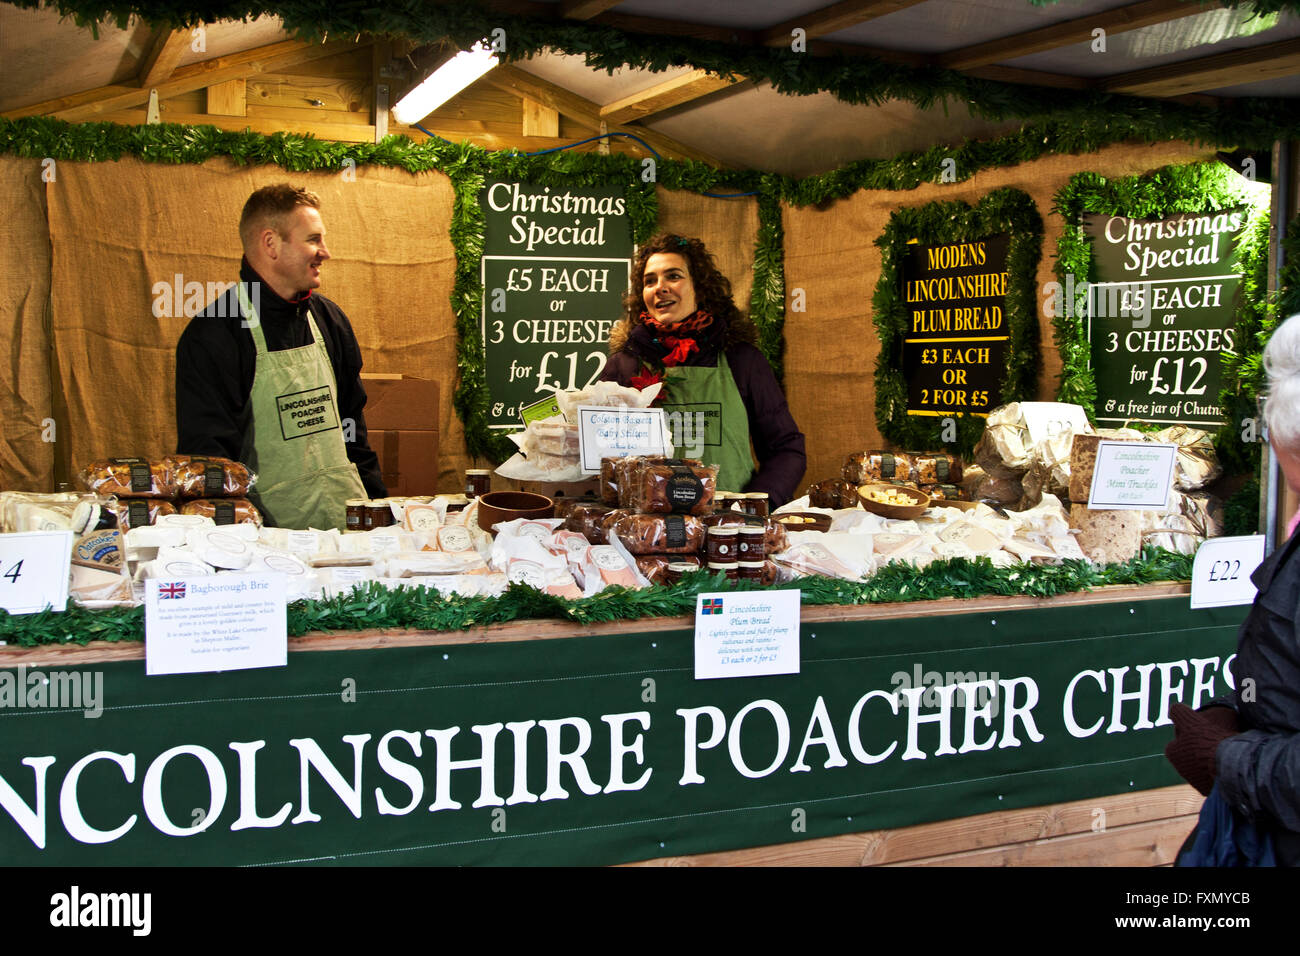 Marché de Noël de Lincoln, Lincolnshire, Angleterre Lincolnshire Braconnier, vendeurs de fromage dans leur stand lors de la foire. Banque D'Images